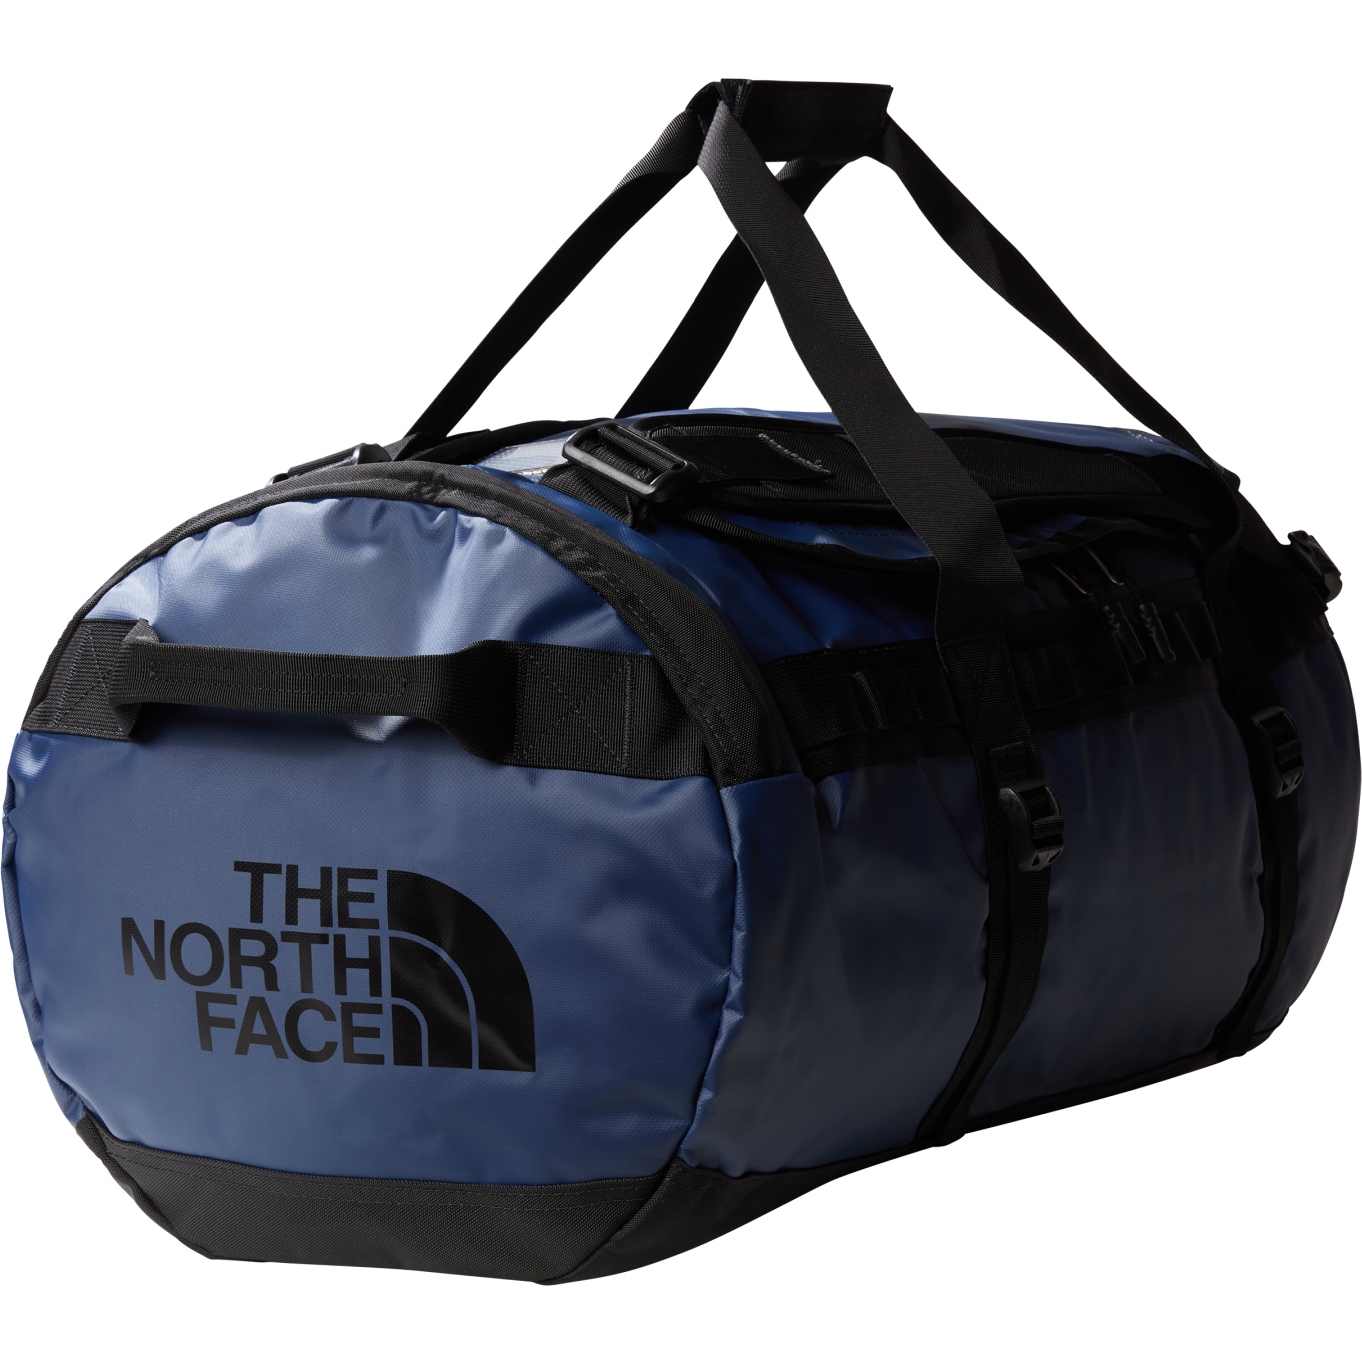 Produktbild von The North Face Base Camp Duffel Reisetasche - Medium - Summit Navy/TNF Black